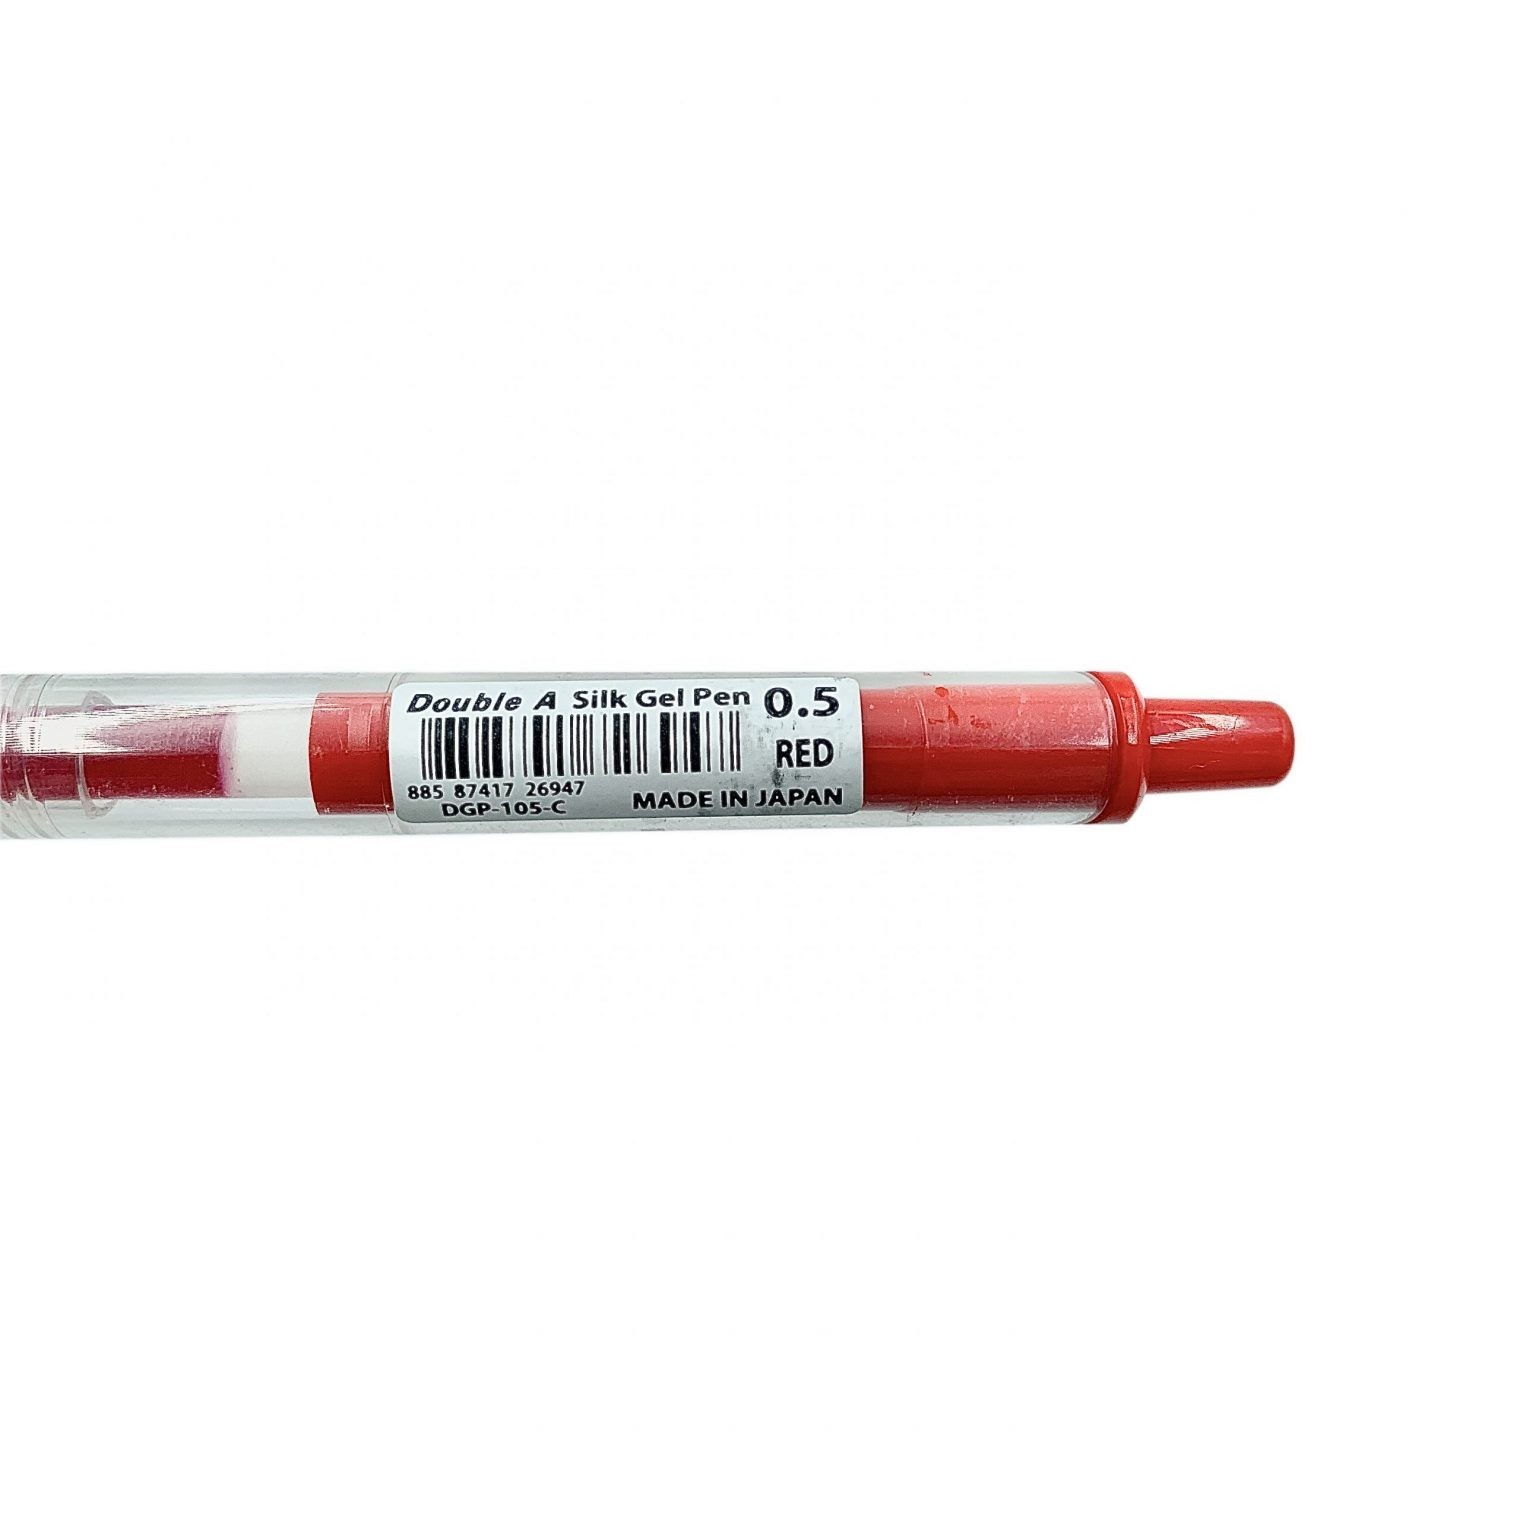 Bút Bi Double A Mực Gel Ngòi 0.5mm – Đỏ